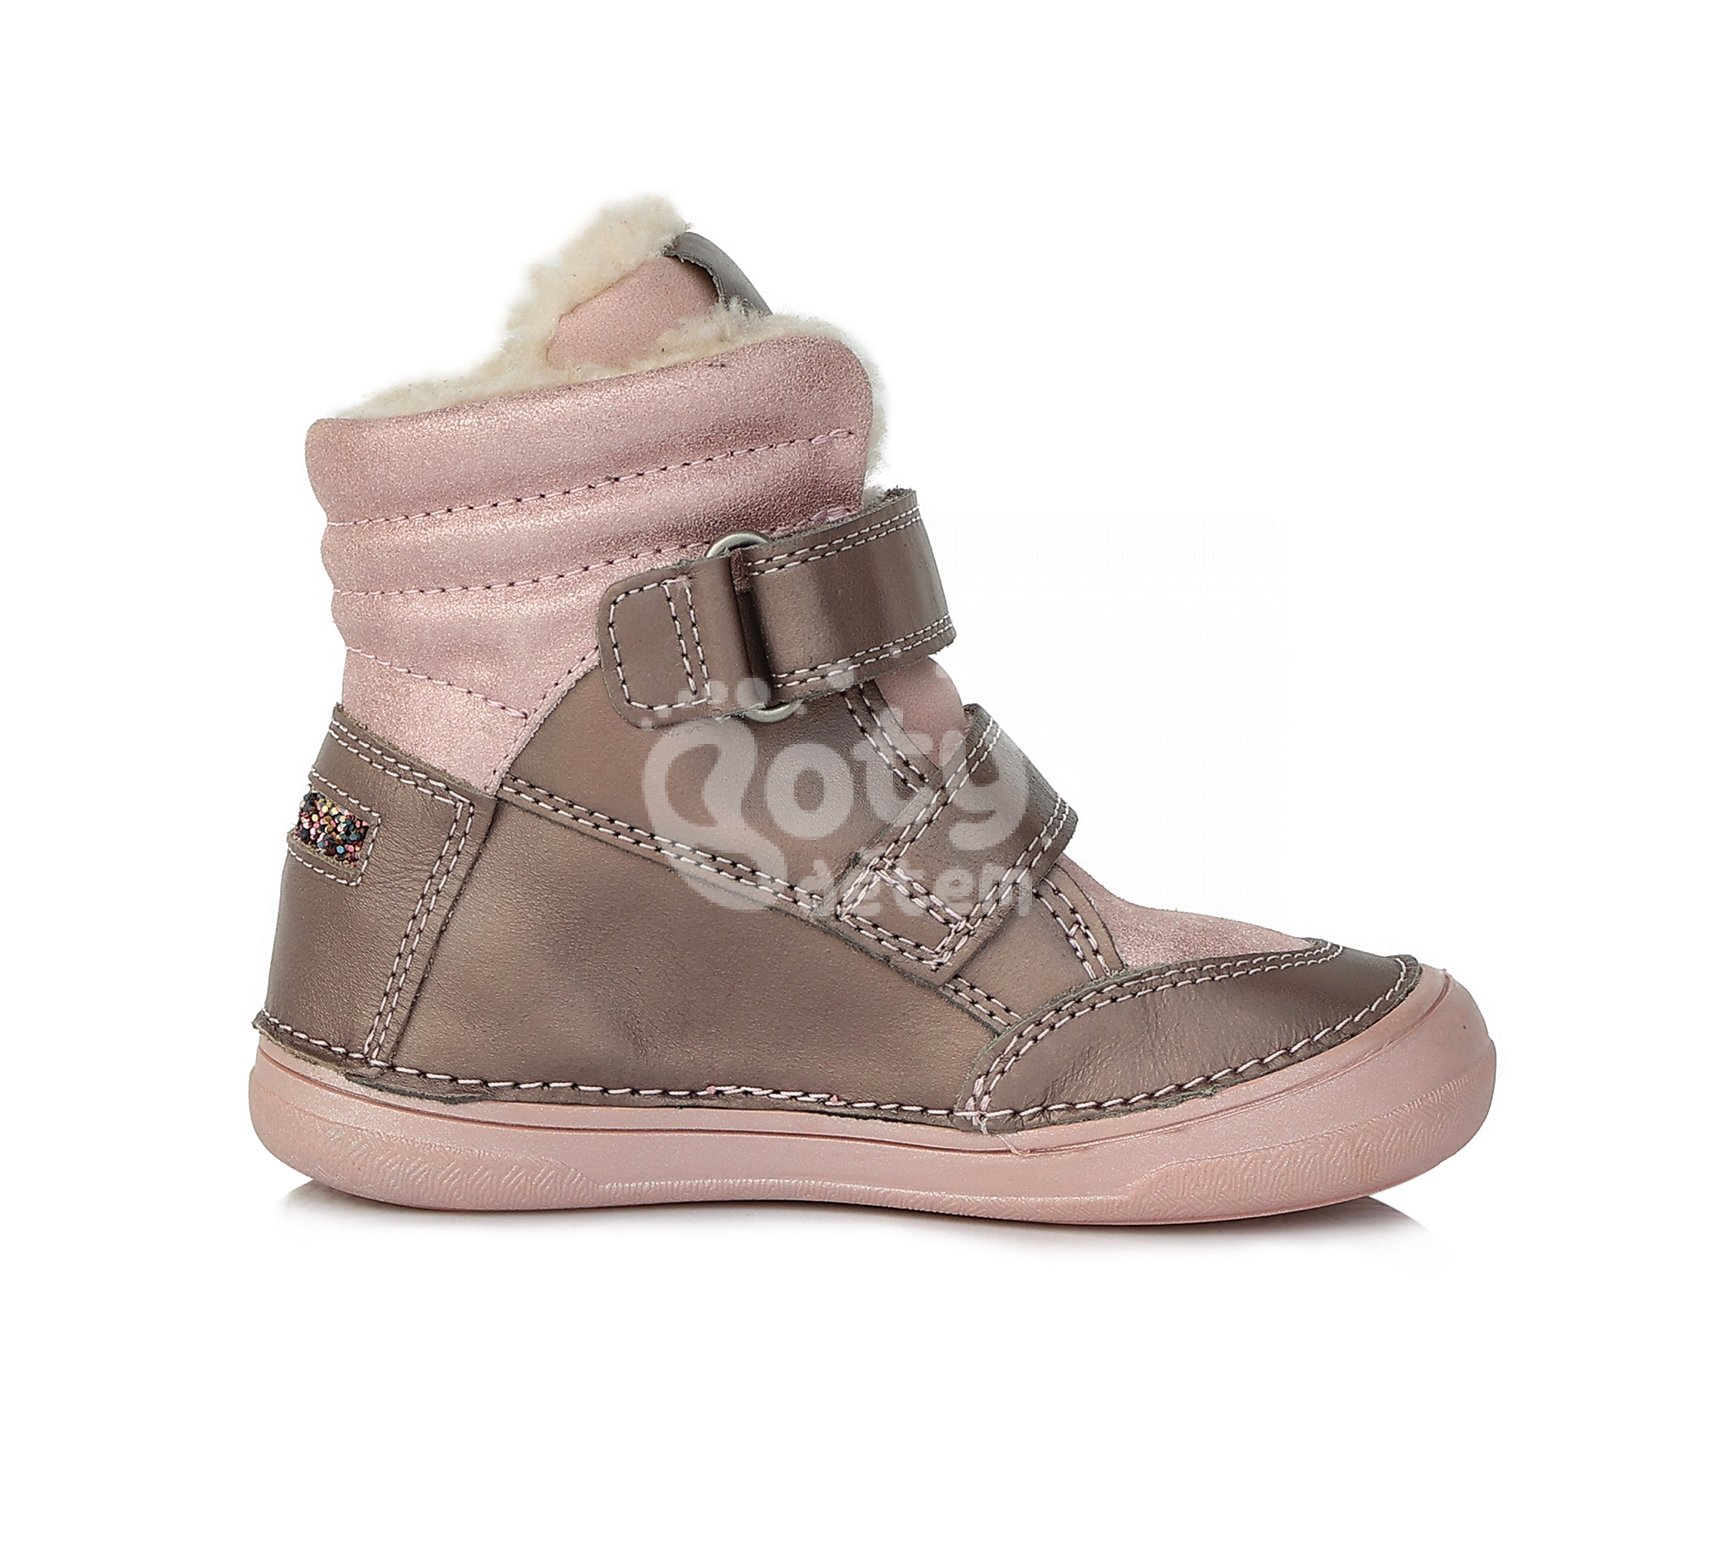 Zimní kožené boty D.D.step W078-758E Bronze